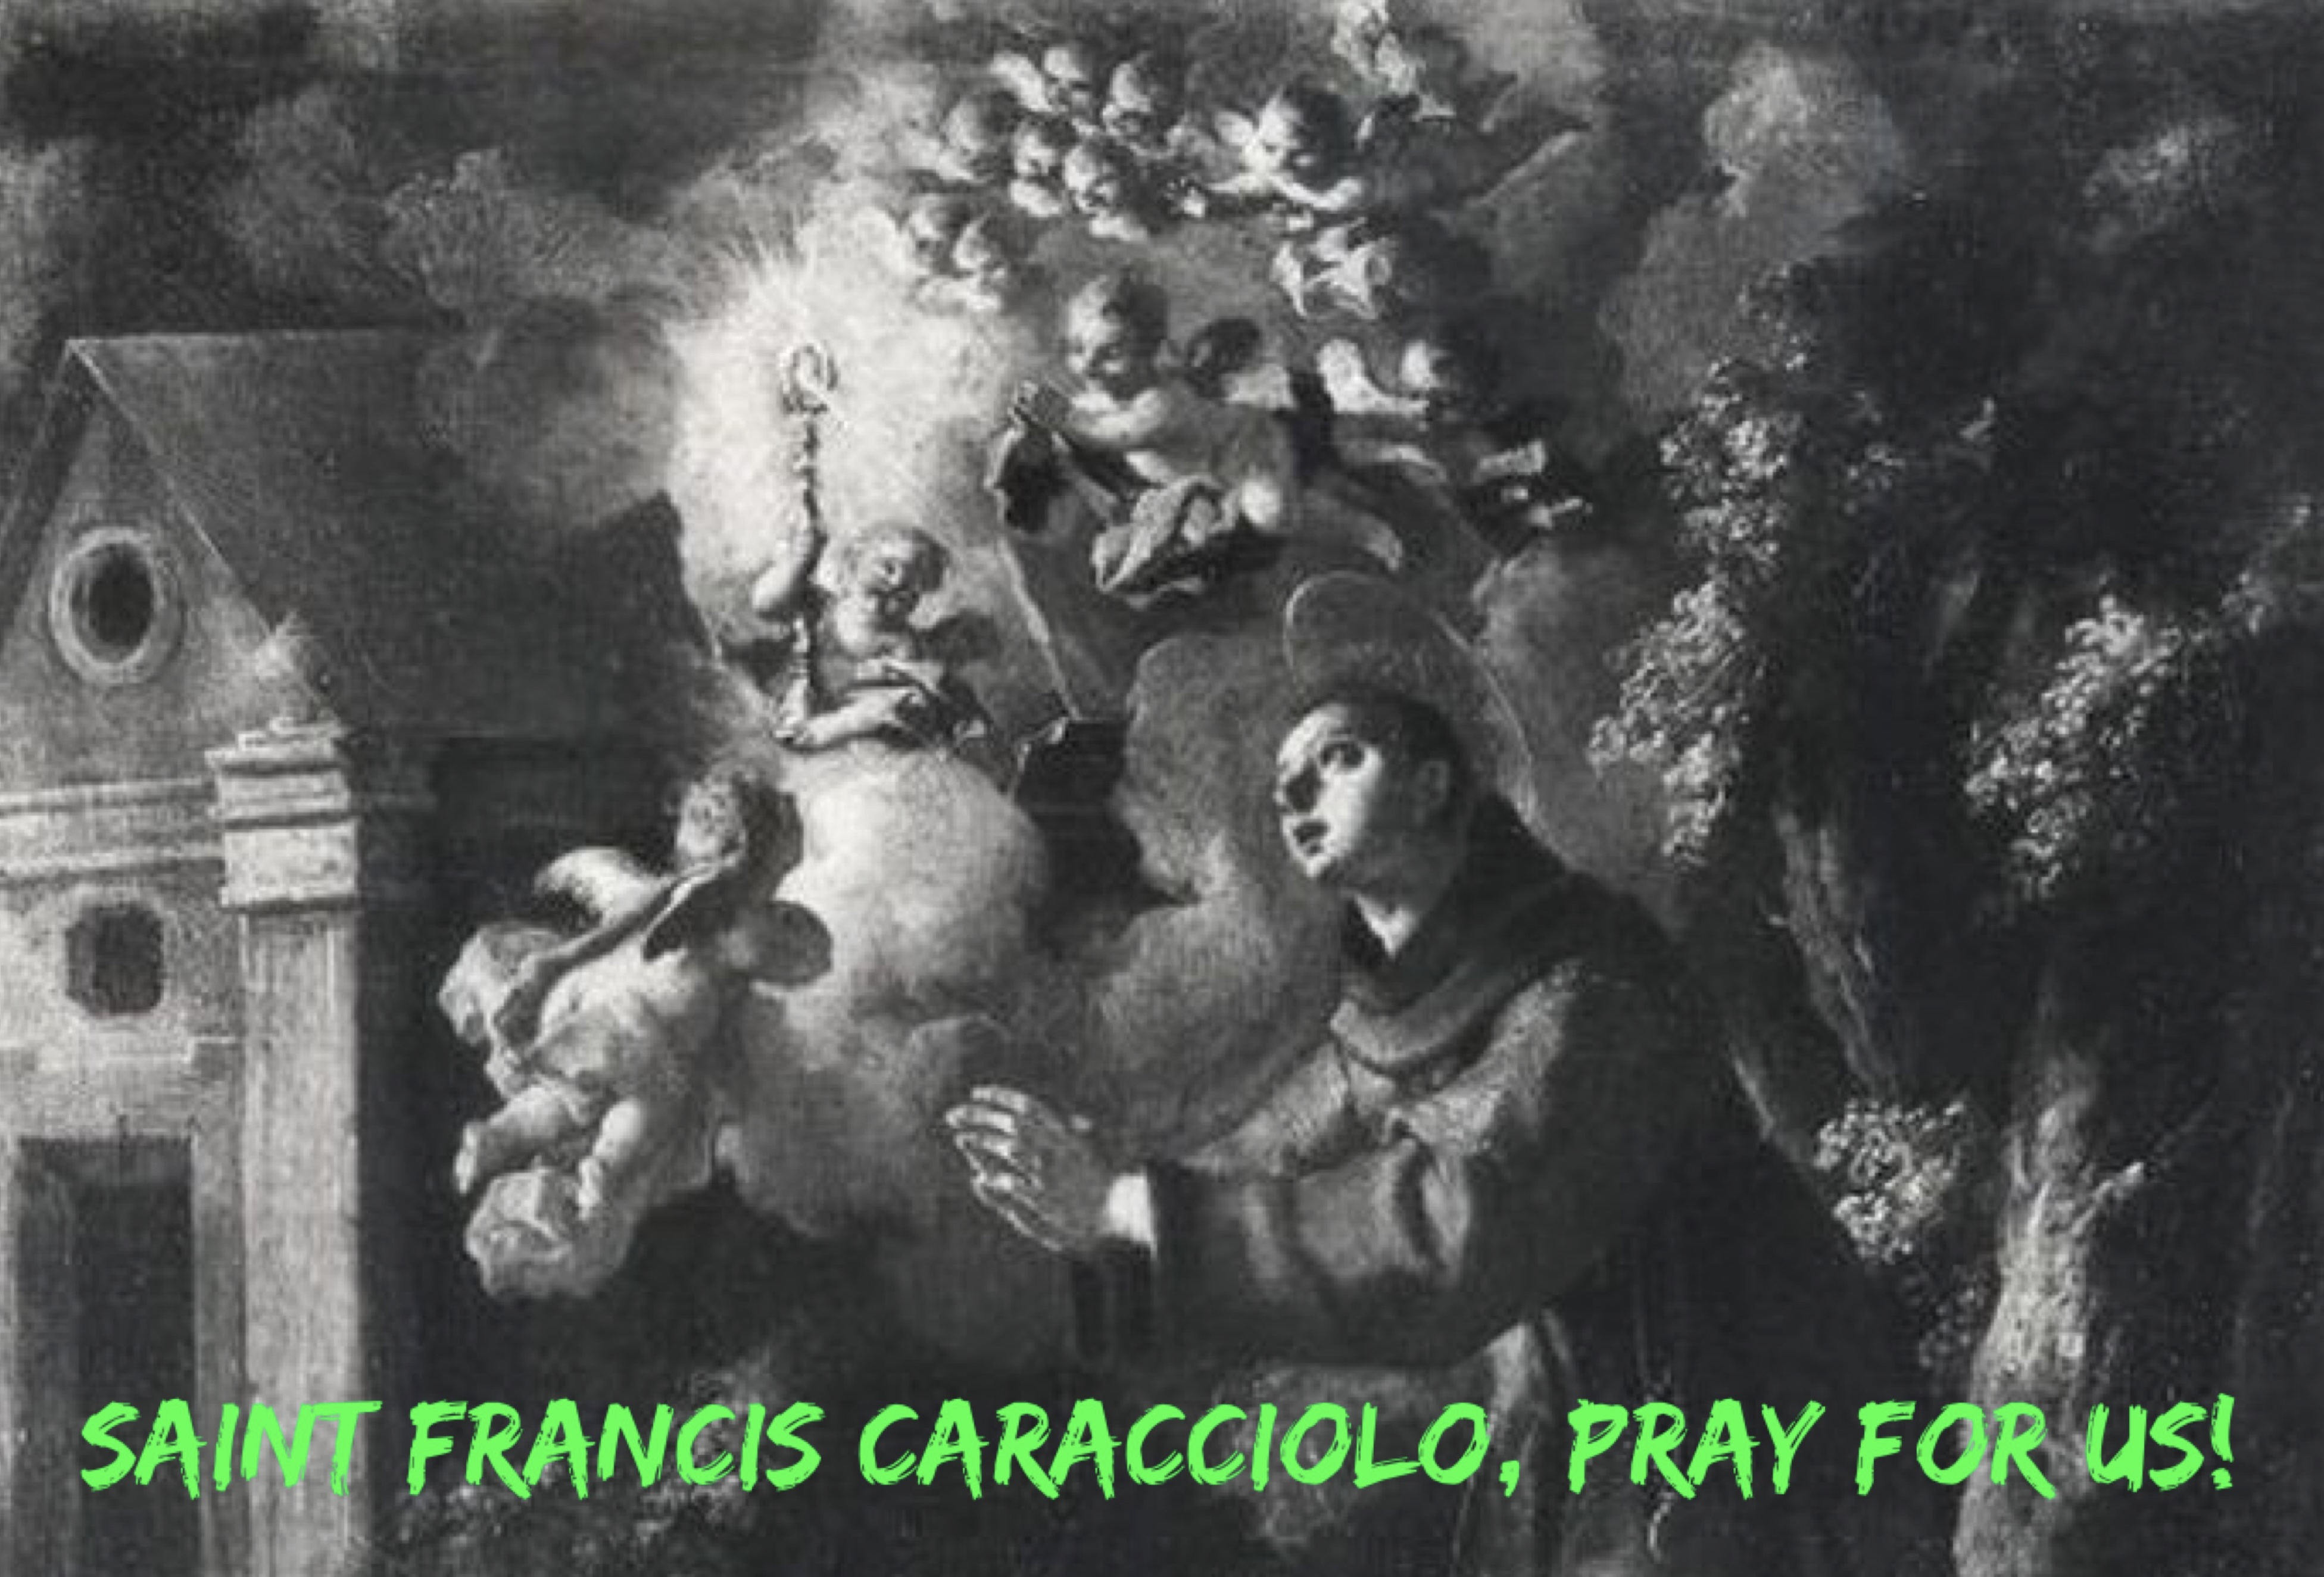 4th May - Saint Francis Caracciolo 